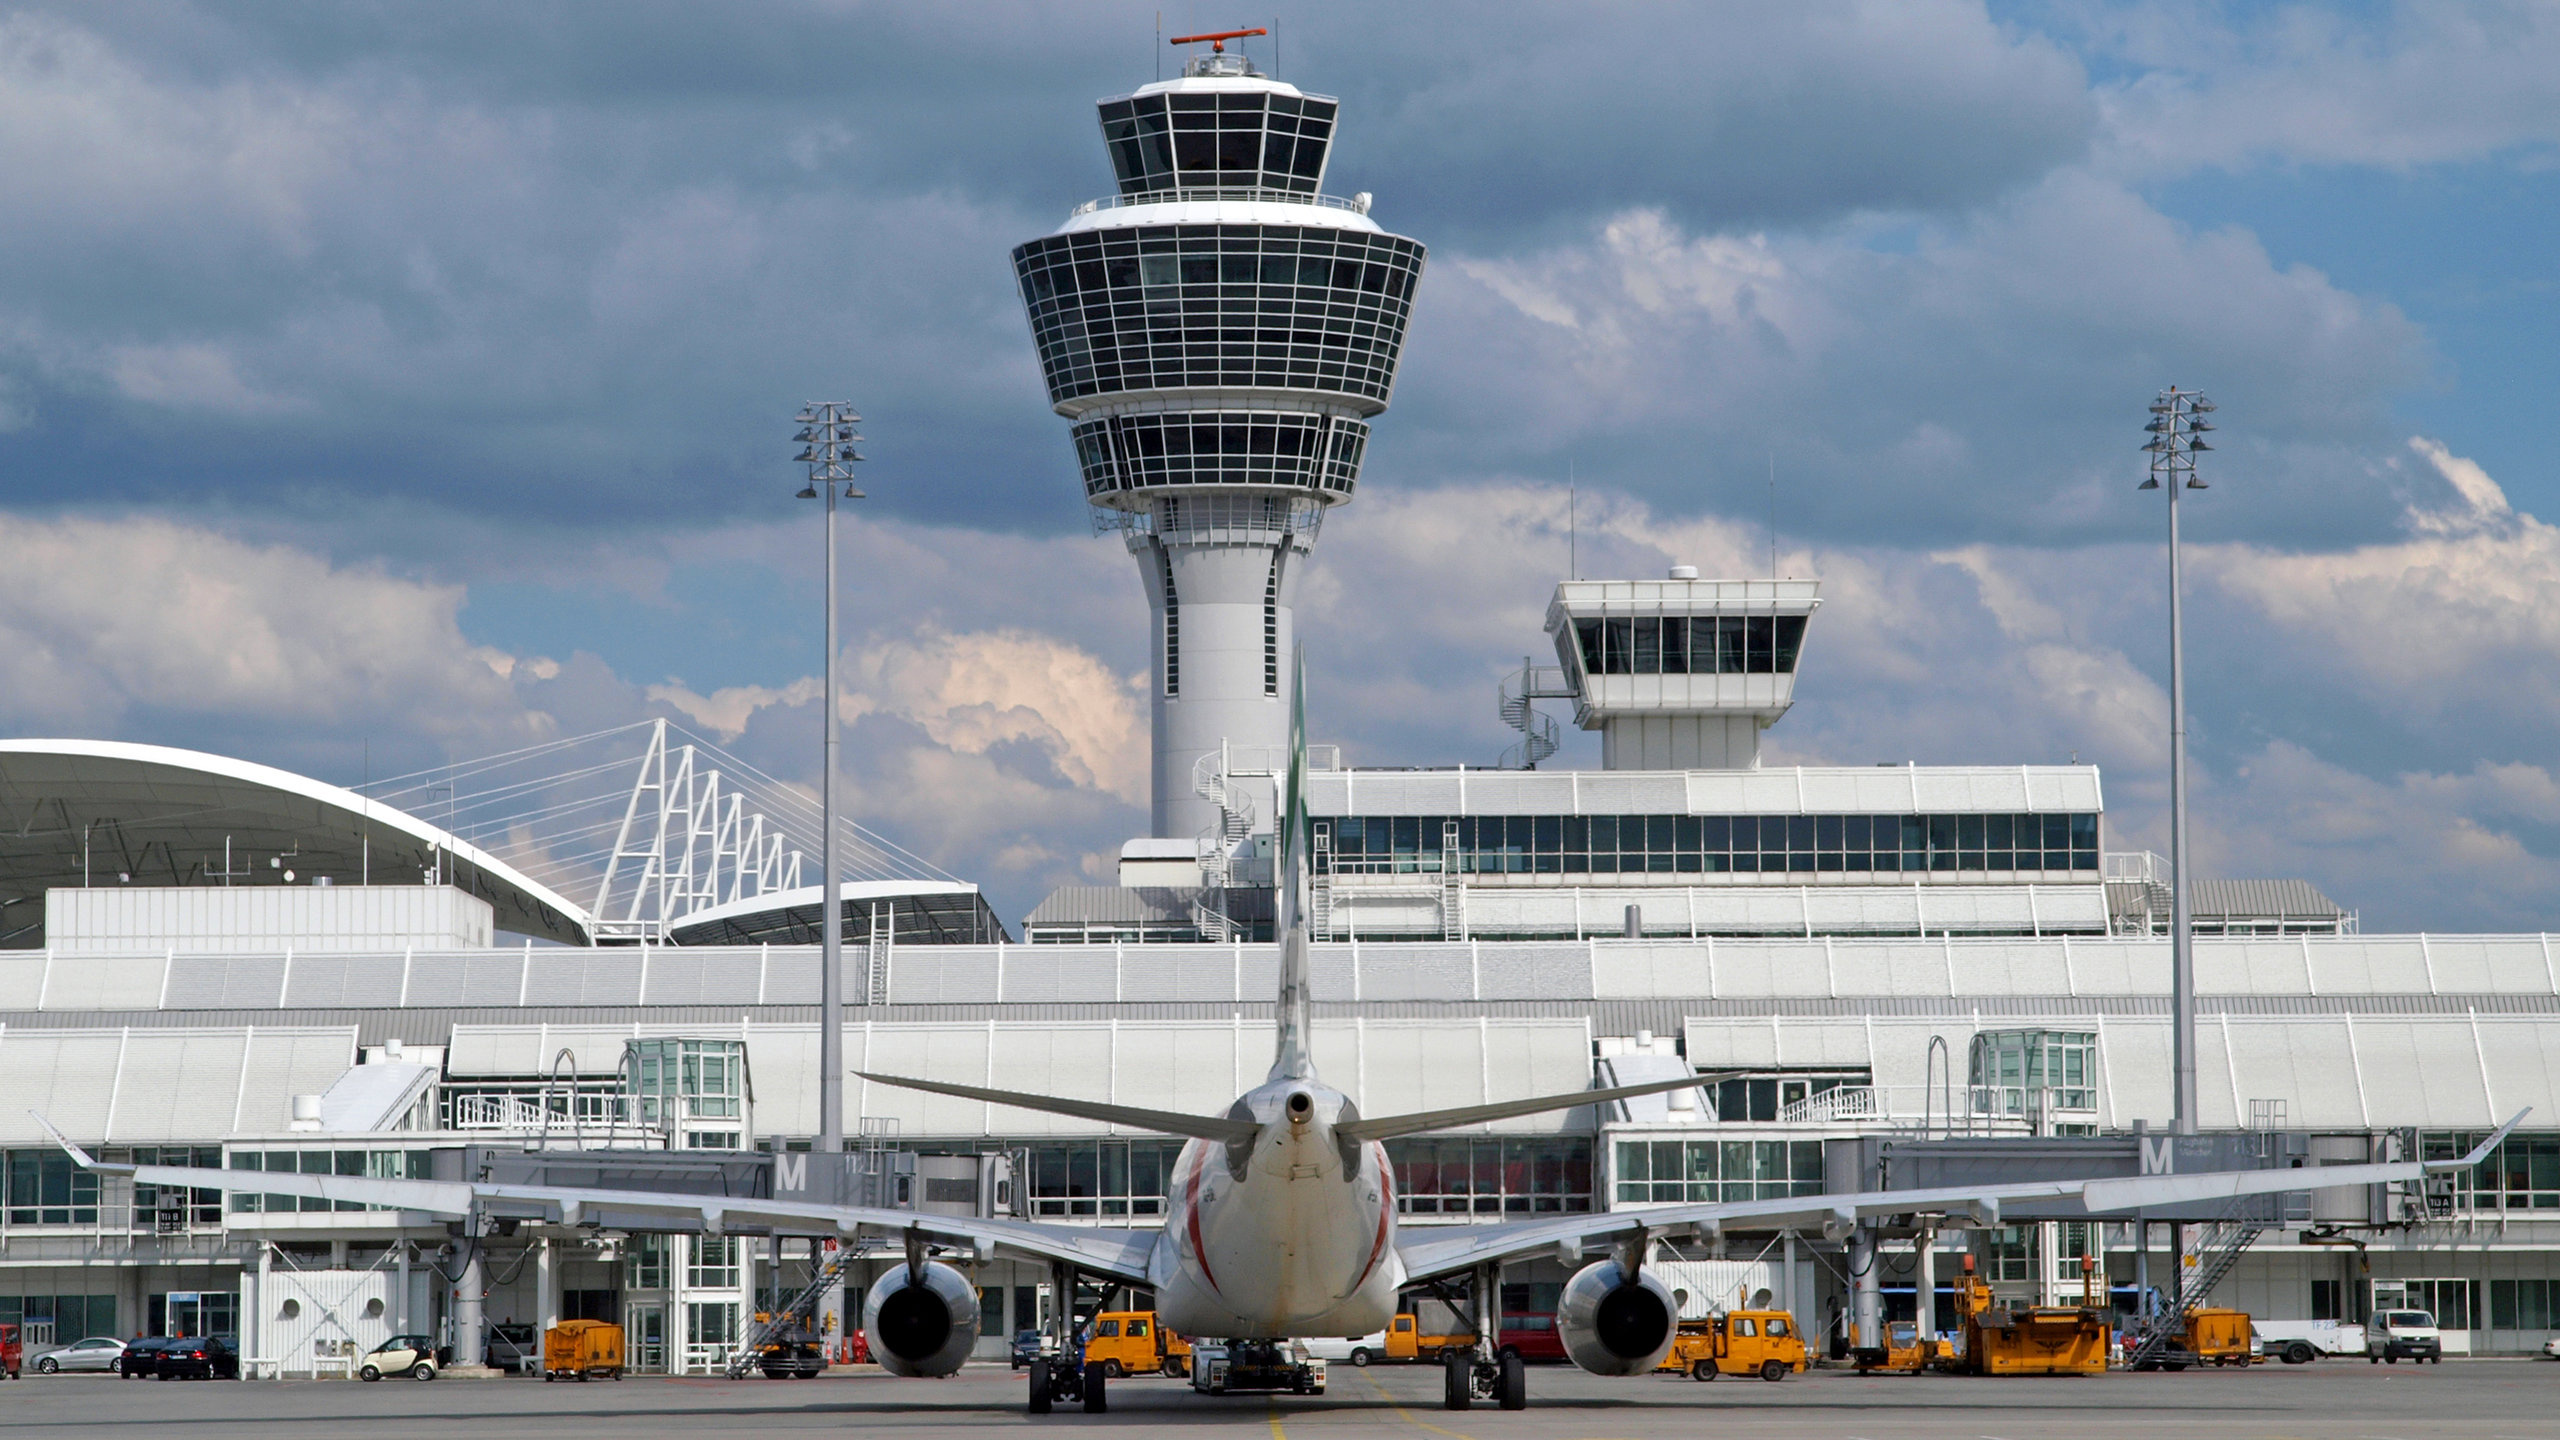 Munich International Airport, Oberding travel guide, Munich exploration, Travel inspiration, 2560x1440 HD Desktop